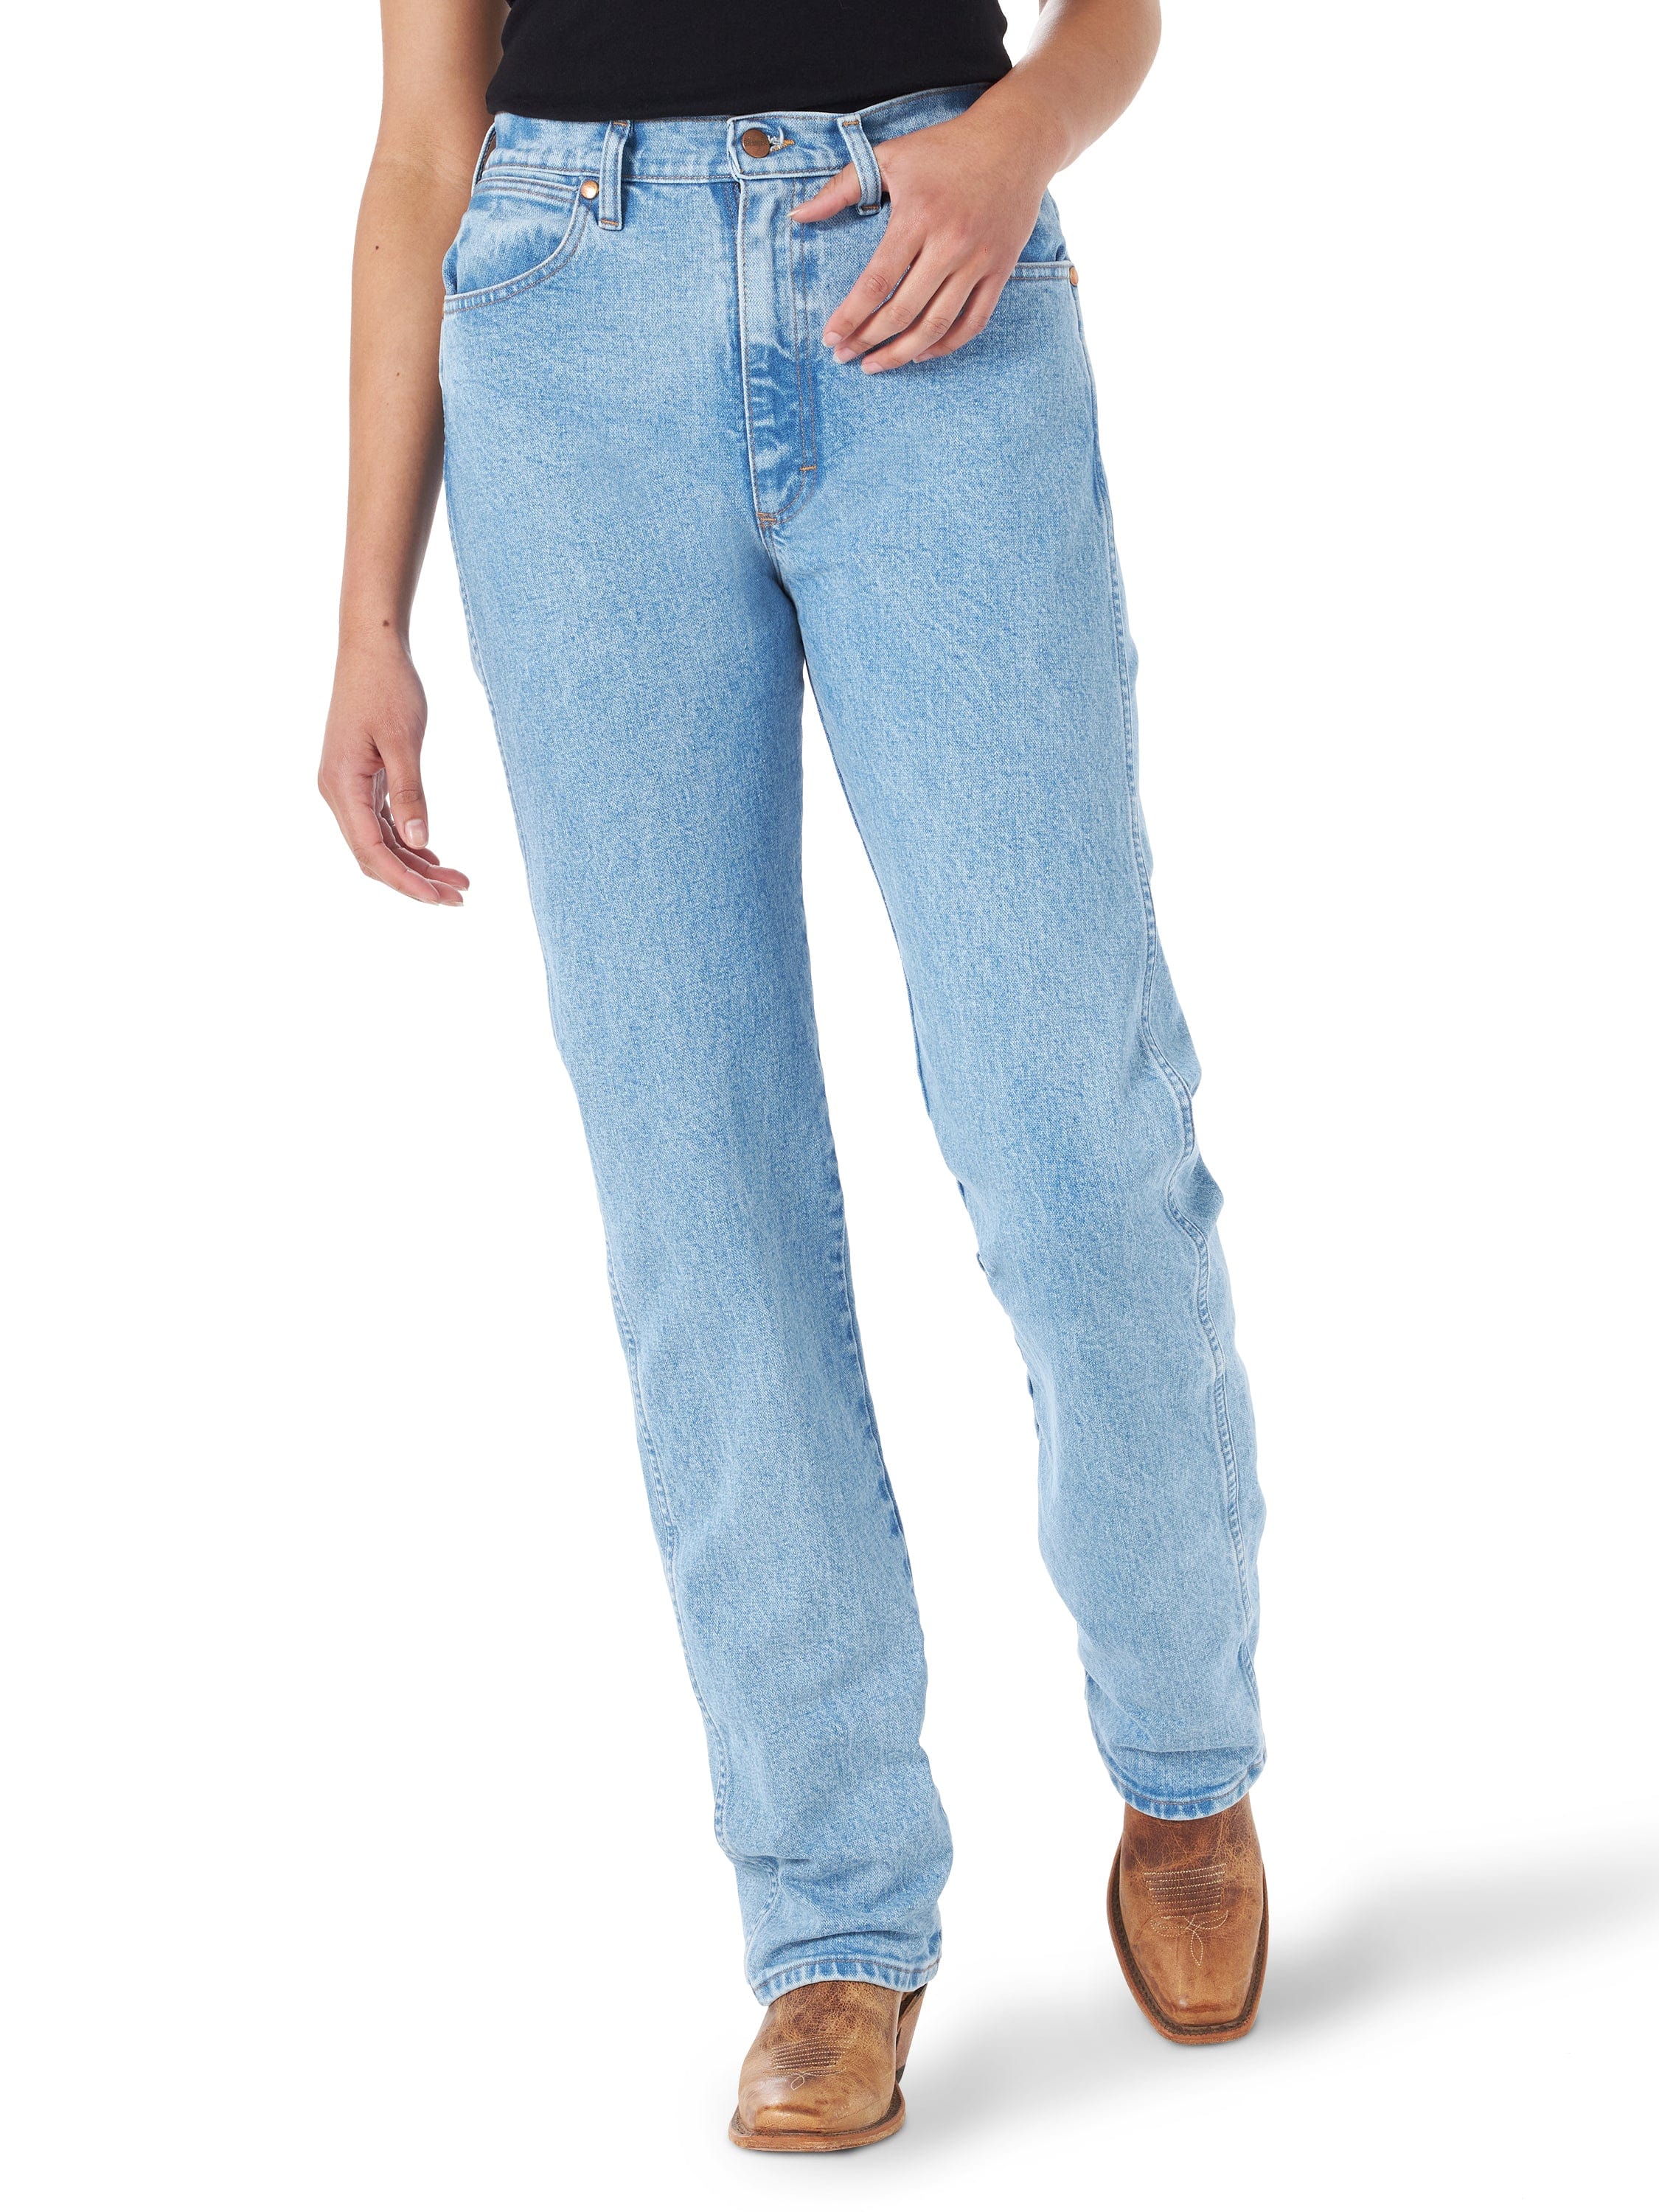 Women's Wrangler Cowboy Cut Antique Wash Slim Fit Jeans 1014MWZAT